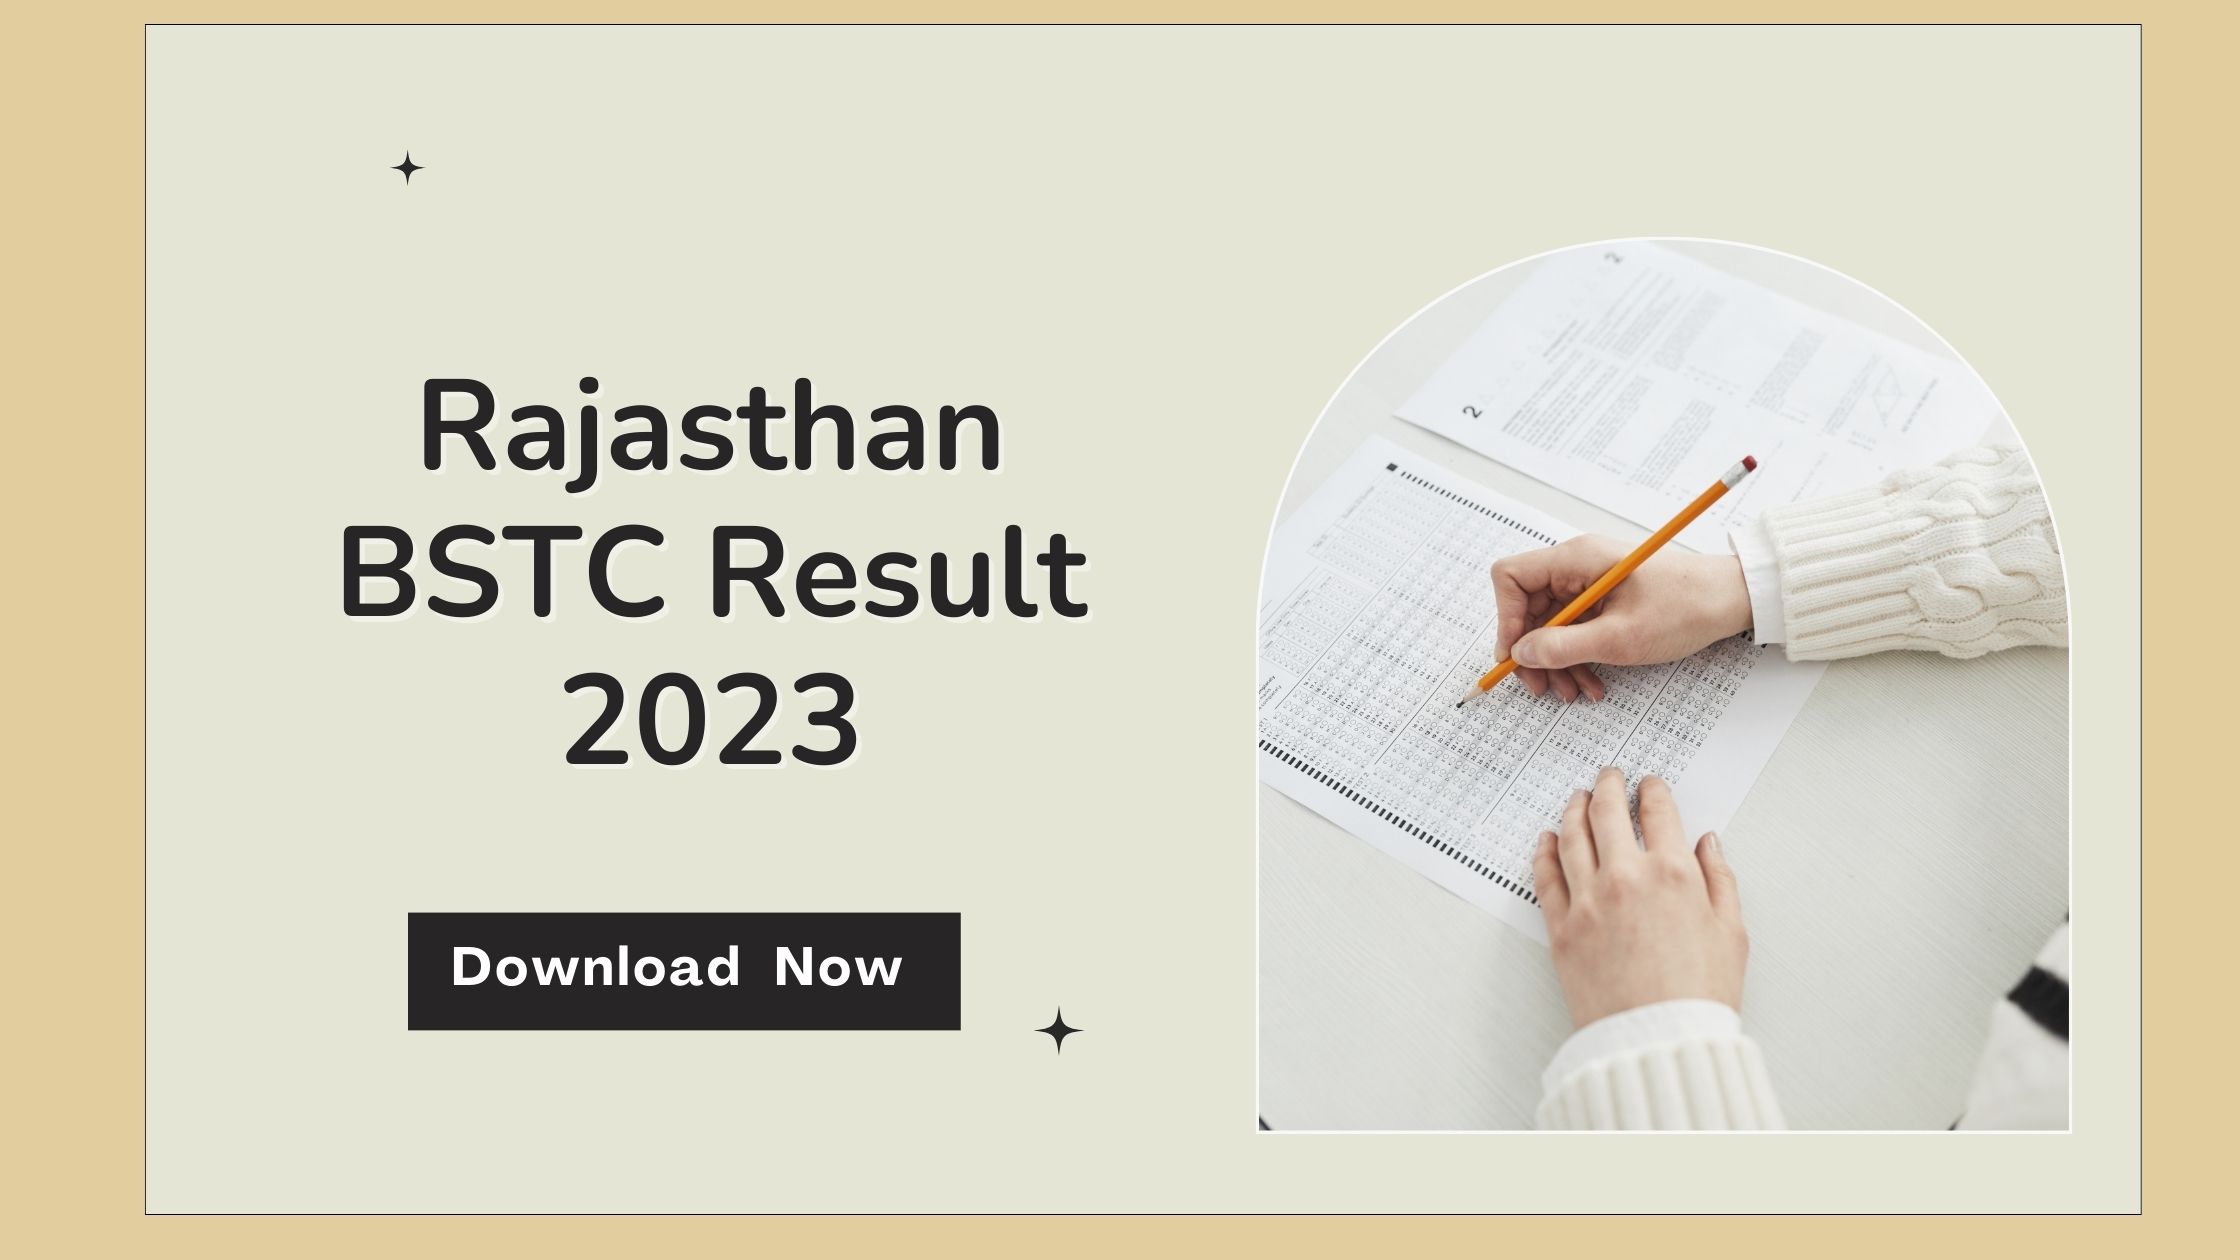 Rajasthan BSTC Result 2023 